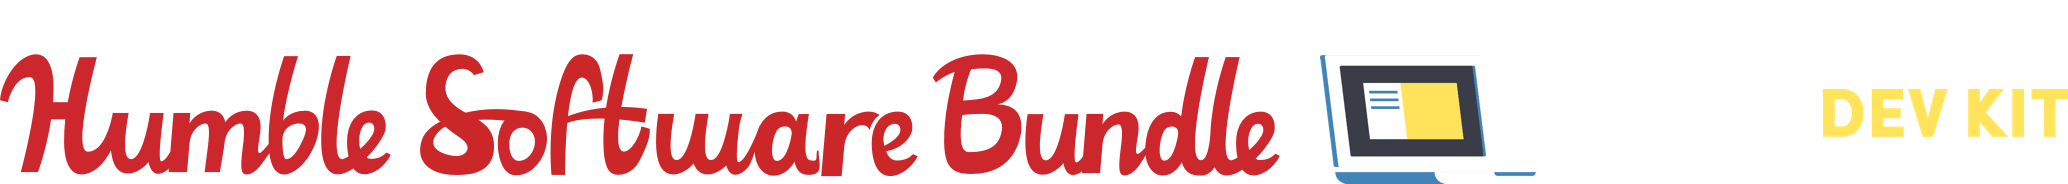 Humble Software Bundle: Python Dev Kit